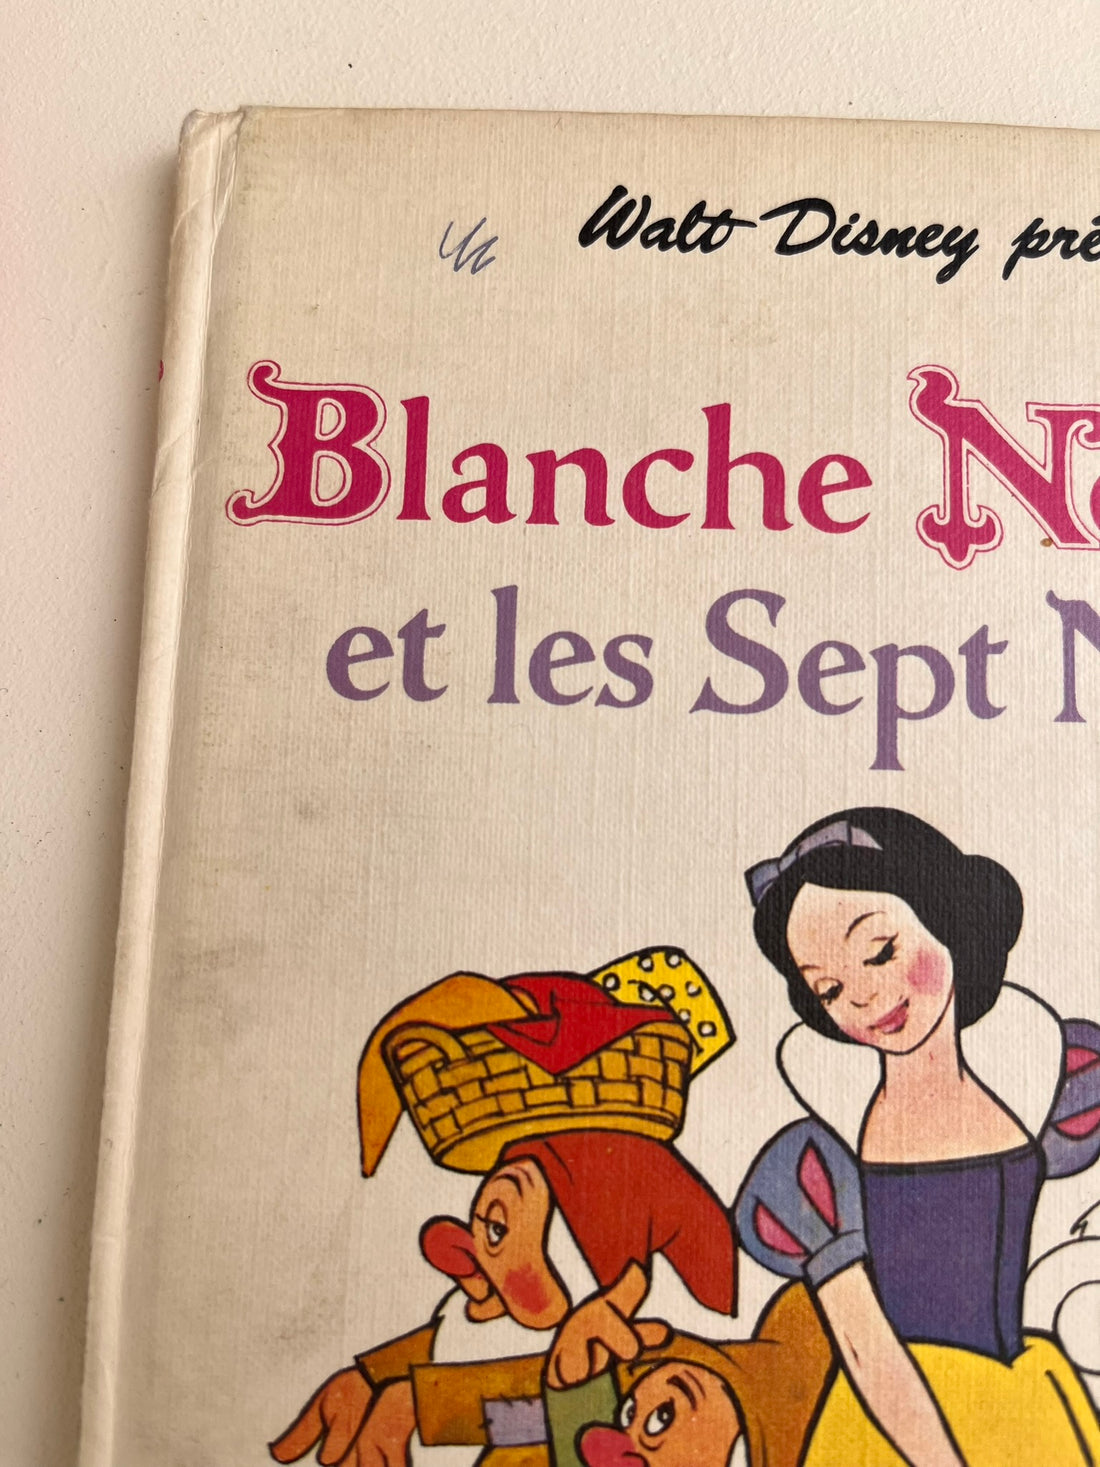 Blanche Neige et les sept nains- Club du Livre Mickey- Disney Vintage